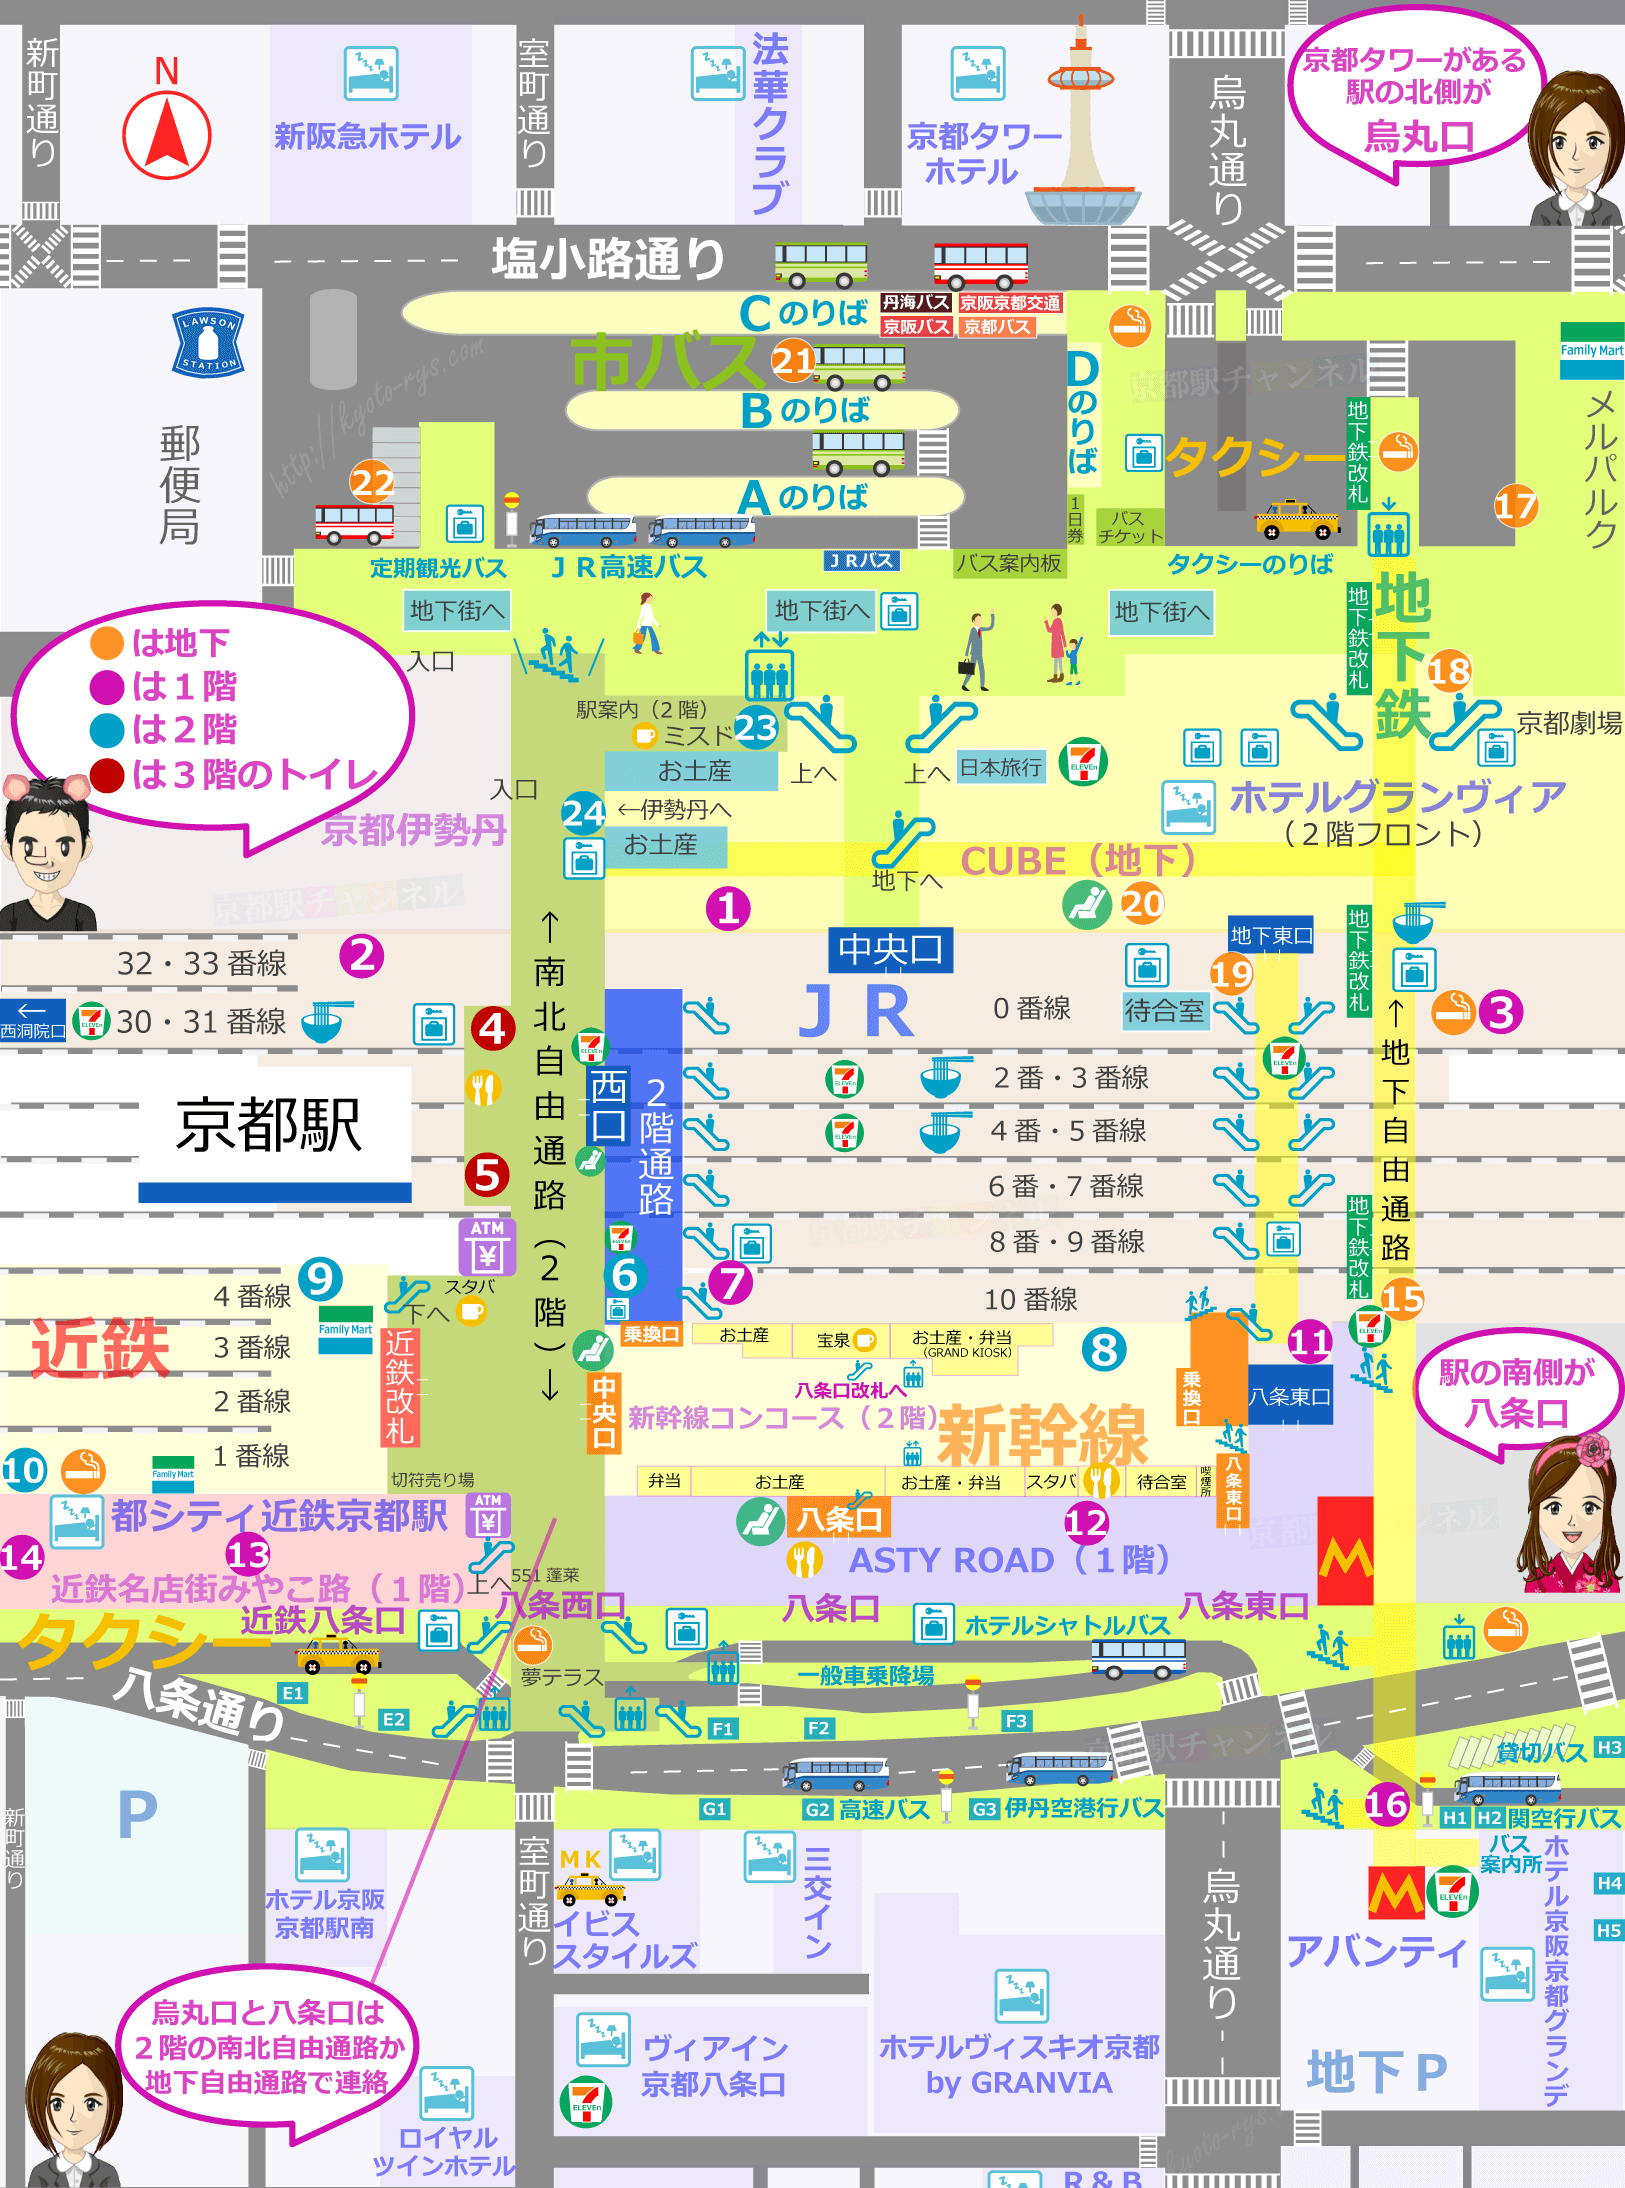 京都駅の構内図とトイレの地図